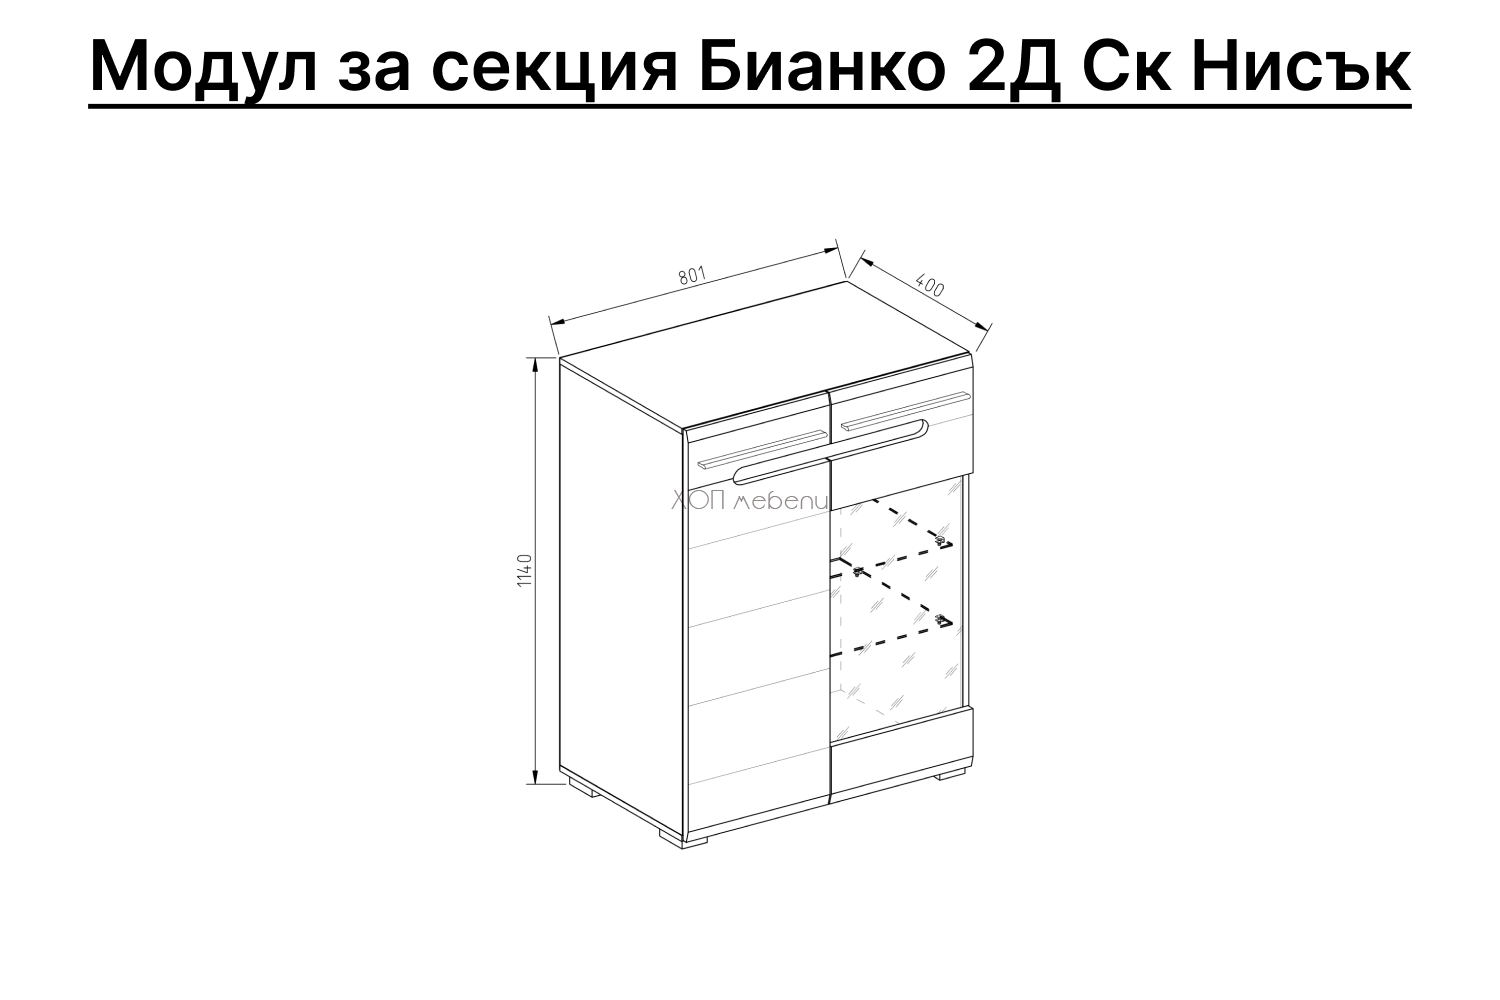 Размери на Нисък шкаф с витрина Бианко 2Д СК графит ID 12560